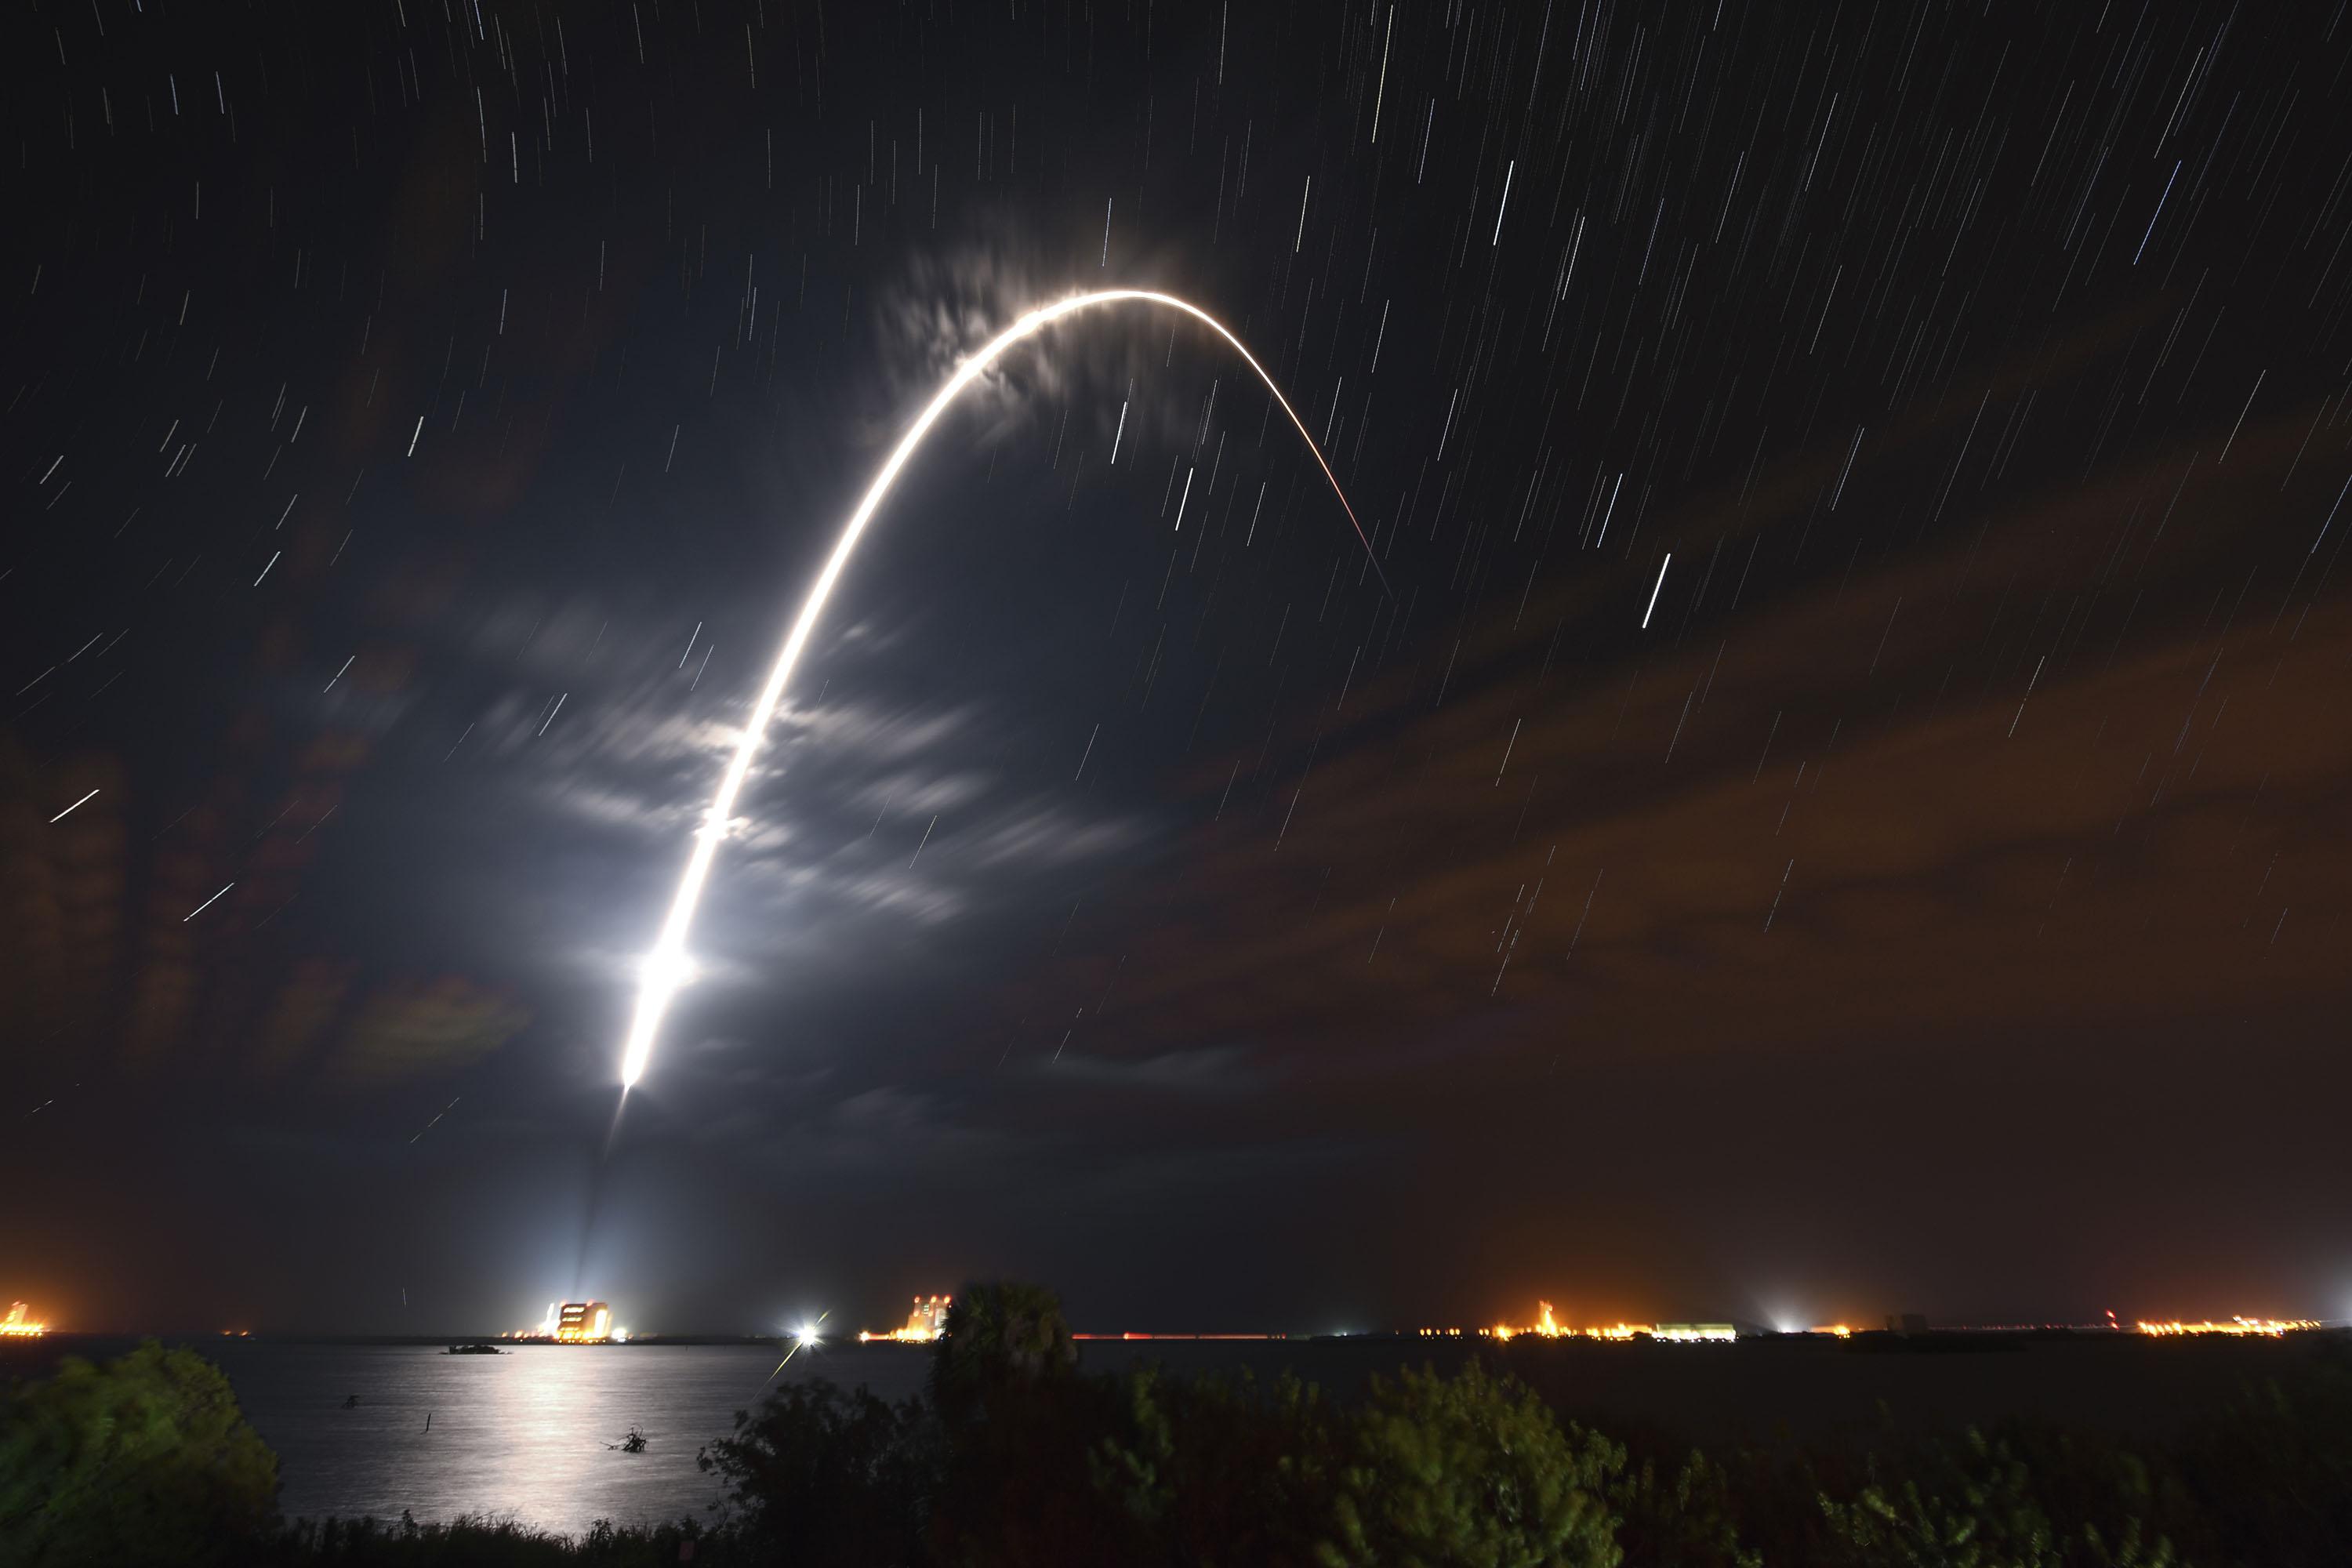 SpaceX mang đến cho chúng ta cái nhìn mới về việc thám hiểm không gian và sự phát triển của công nghệ. Xem các hình ảnh liên quan đến SpaceX để cảm nhận được những nỗ lực đáng kinh ngạc của những người khao khát khám phá vũ trụ.